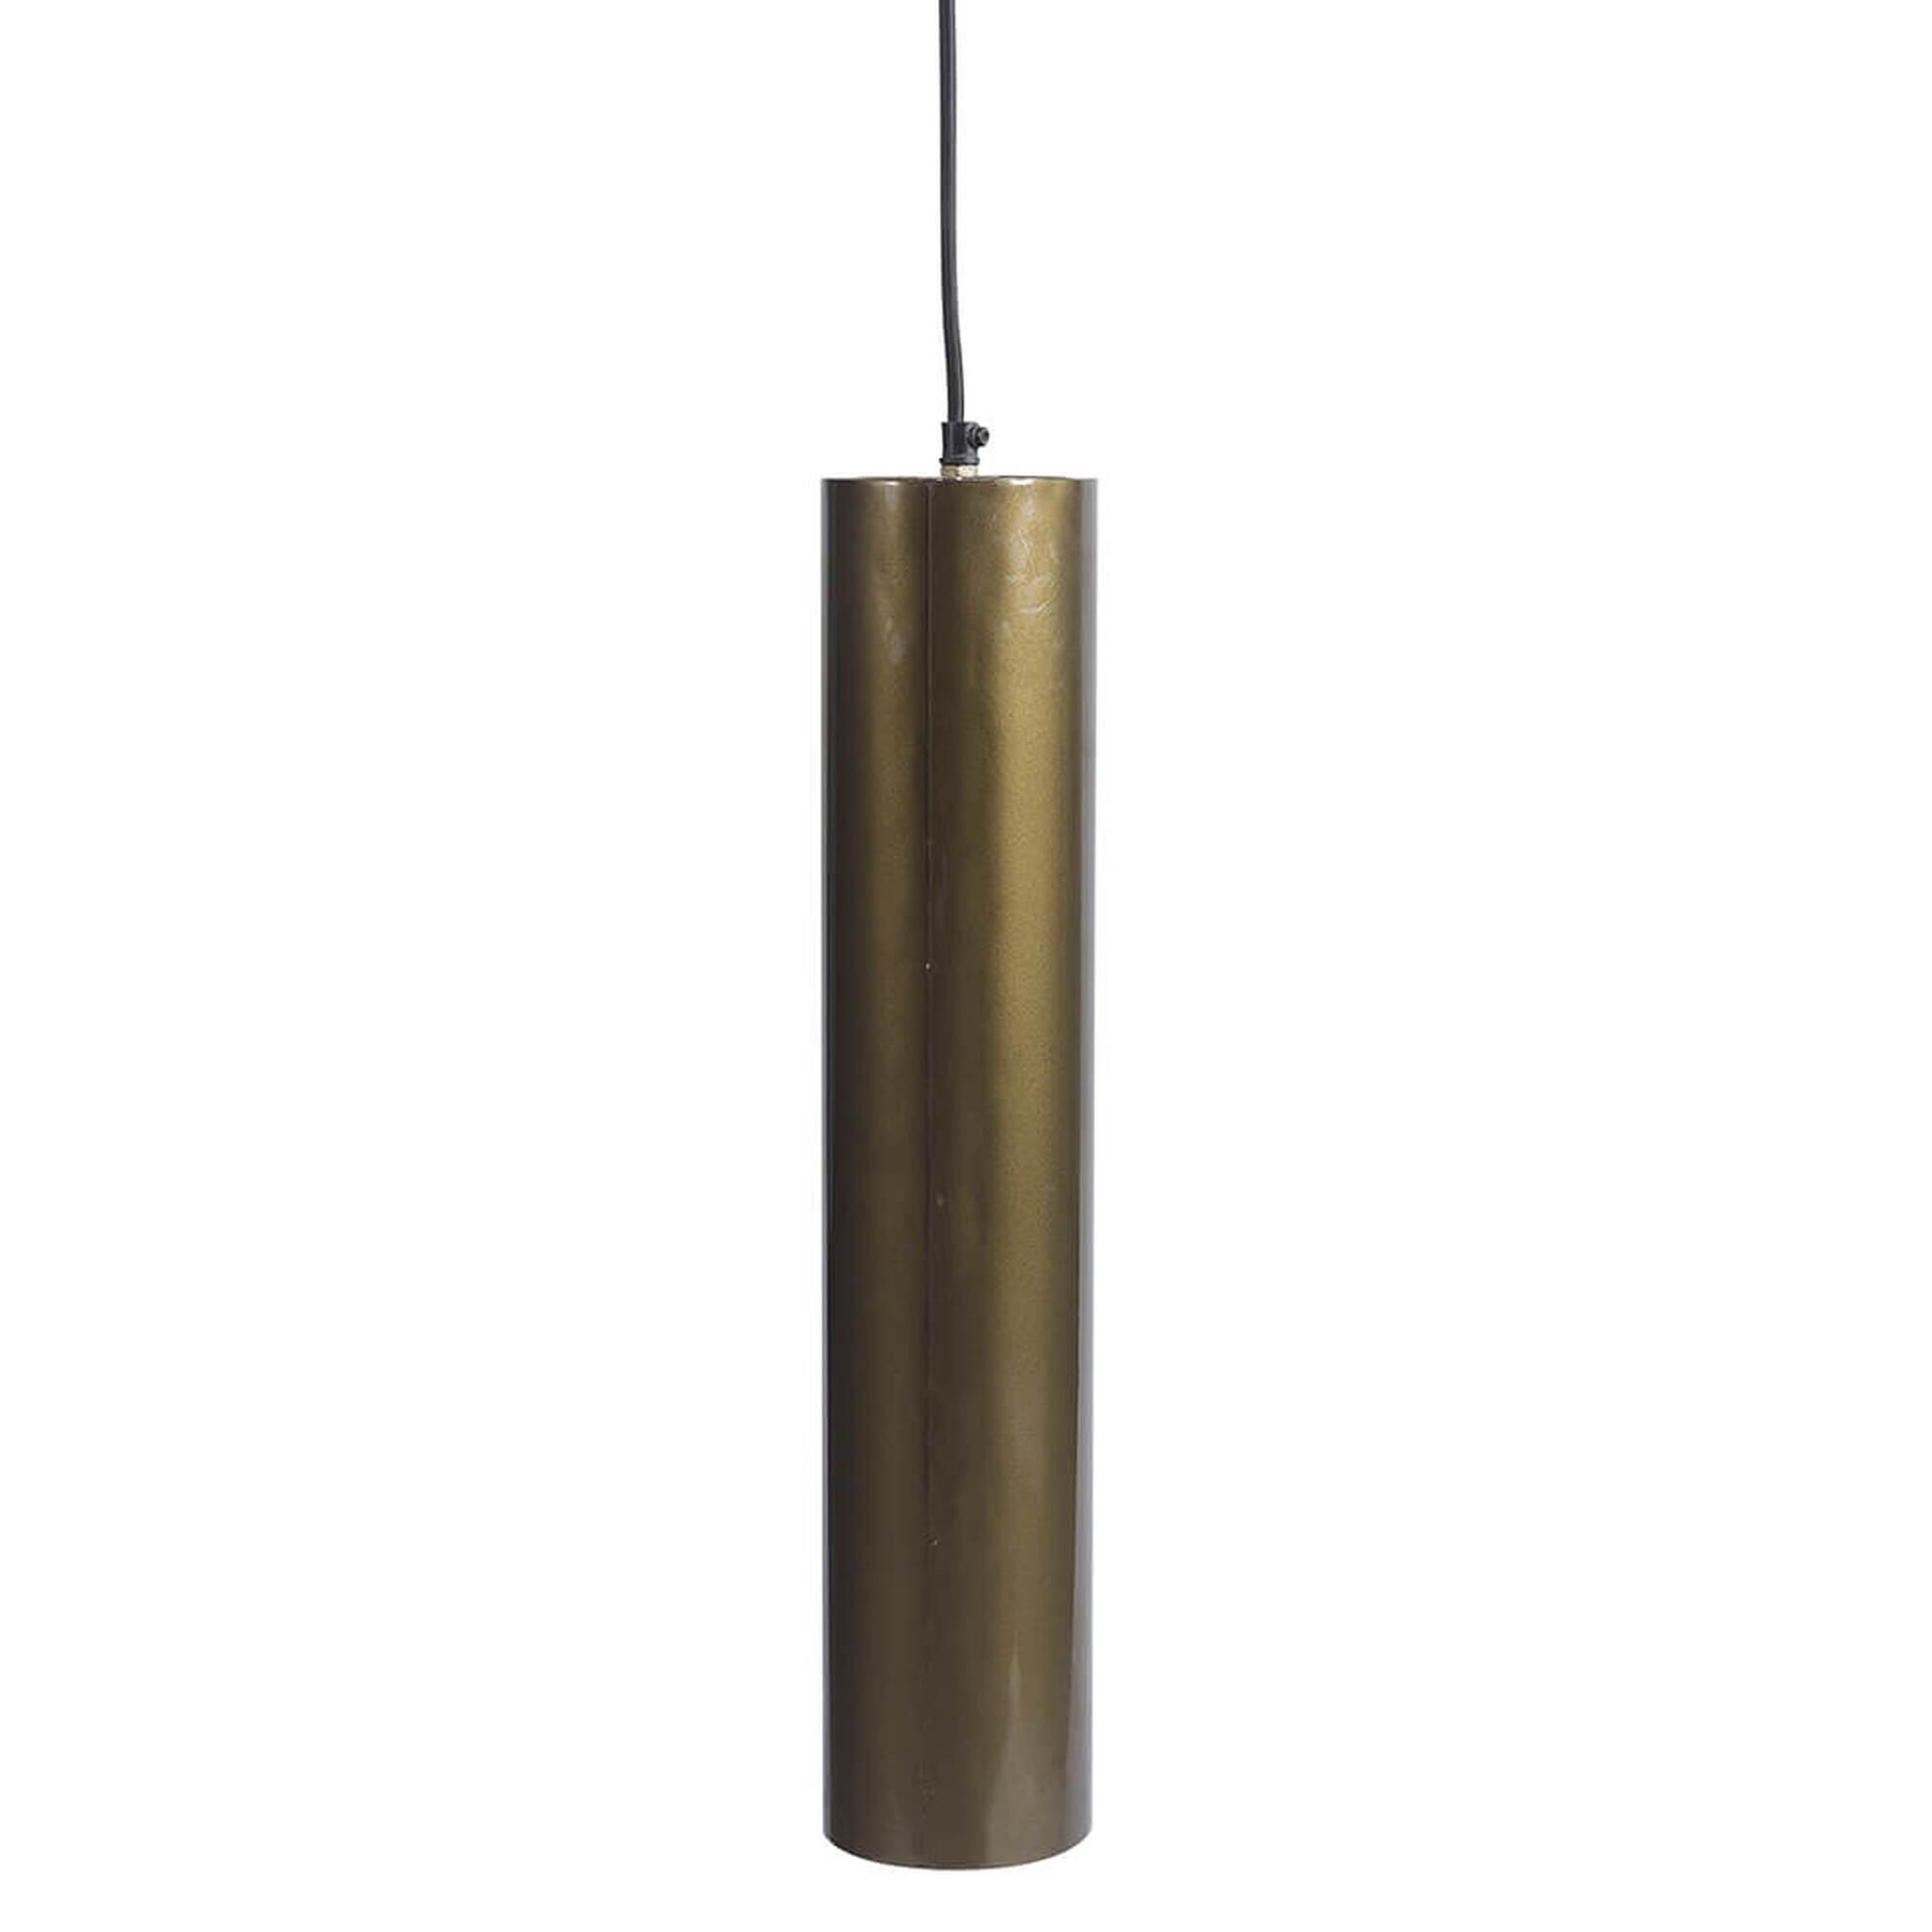  Jonah cylinderformet lampe L - antikmessing fra Trademark Living i Jern (Varenr: M08374)